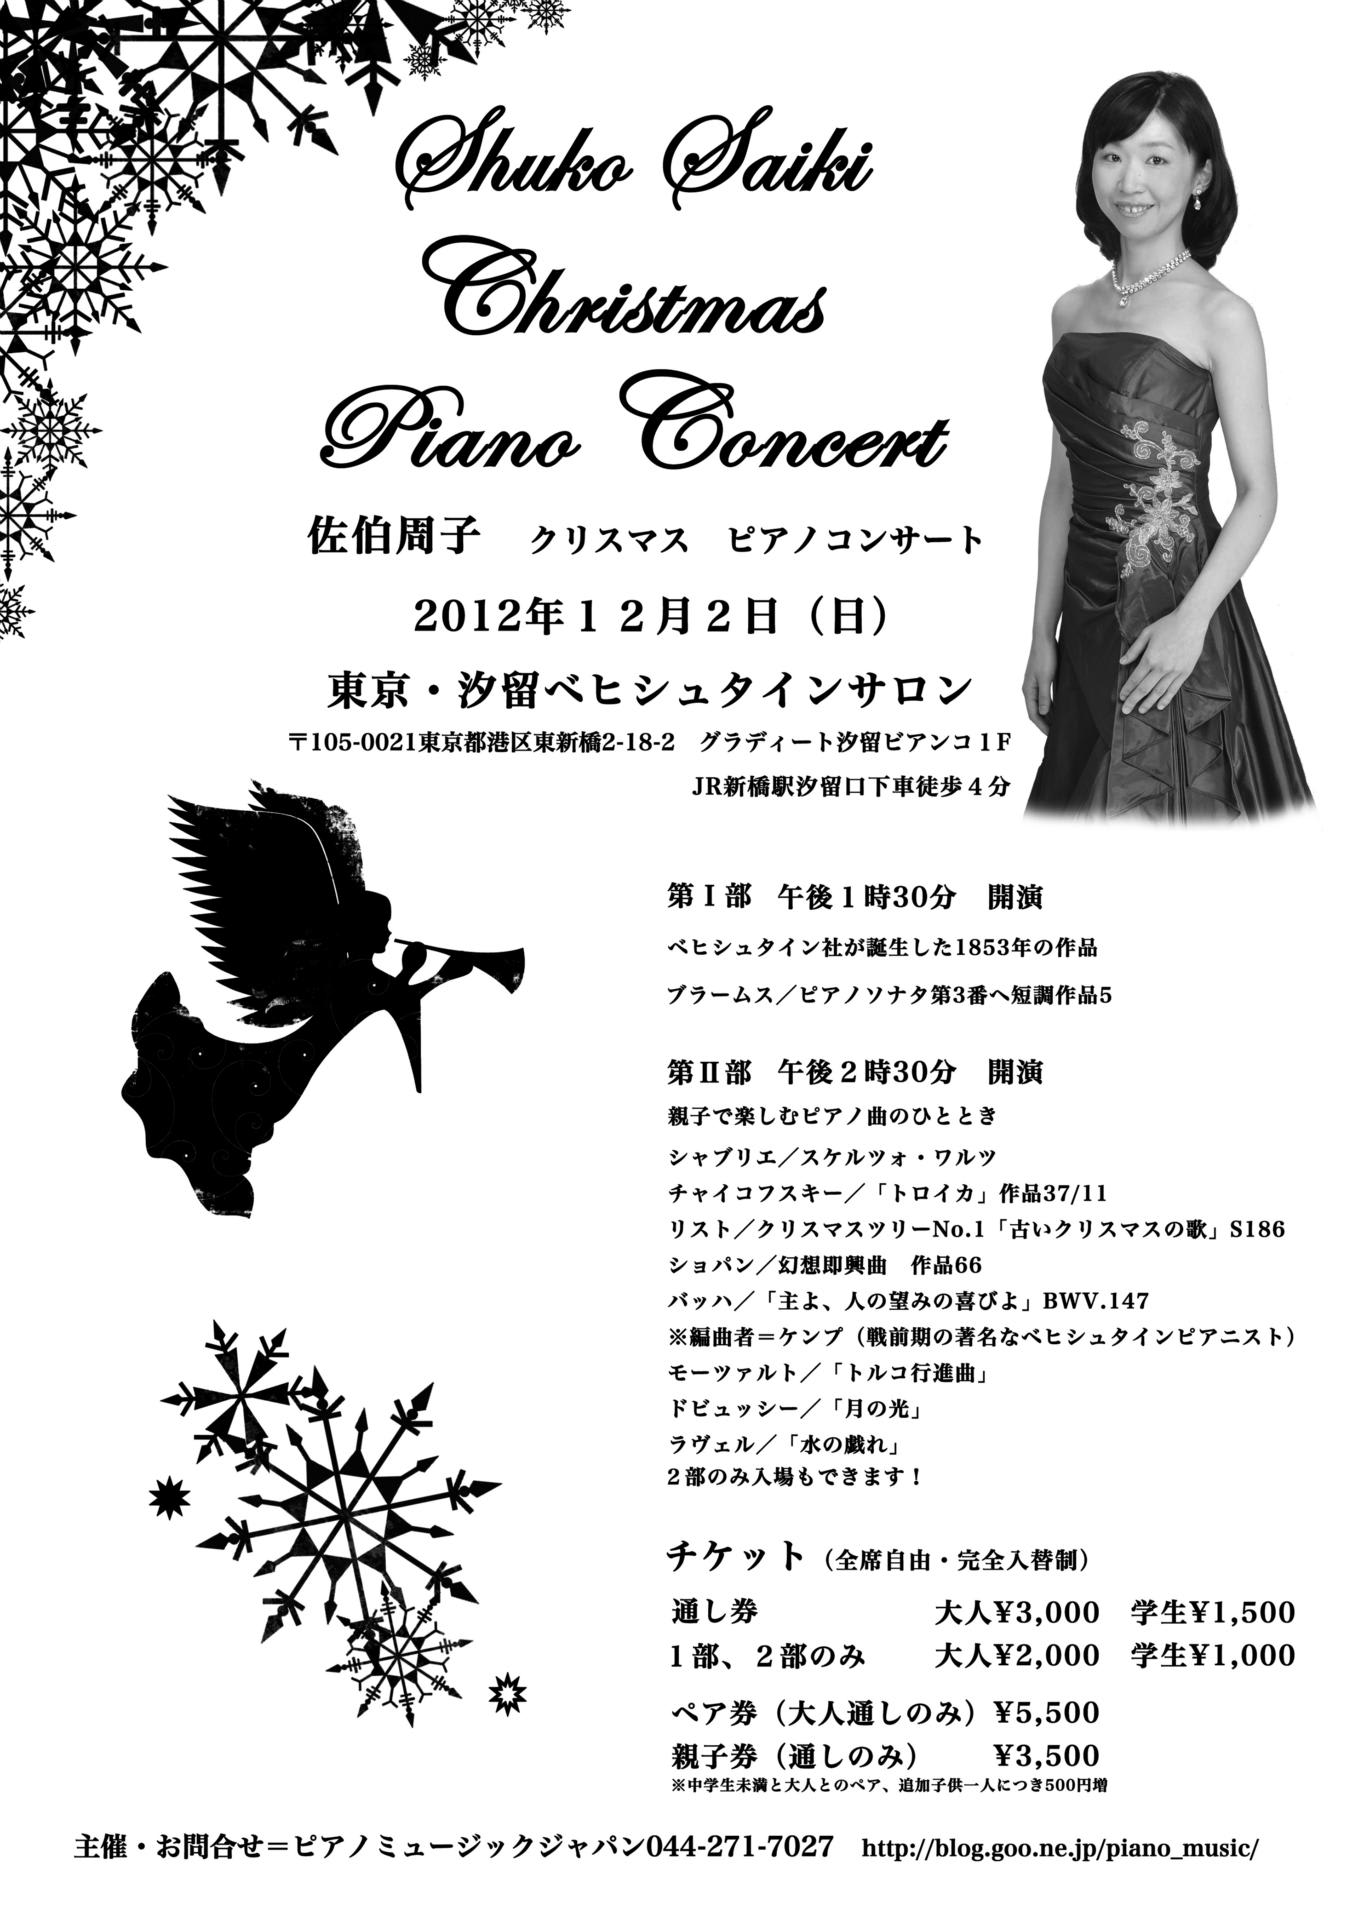 12 12 02 佐伯周子 クリスマスコンサート 紹介 No 2164 Piano Music Japan